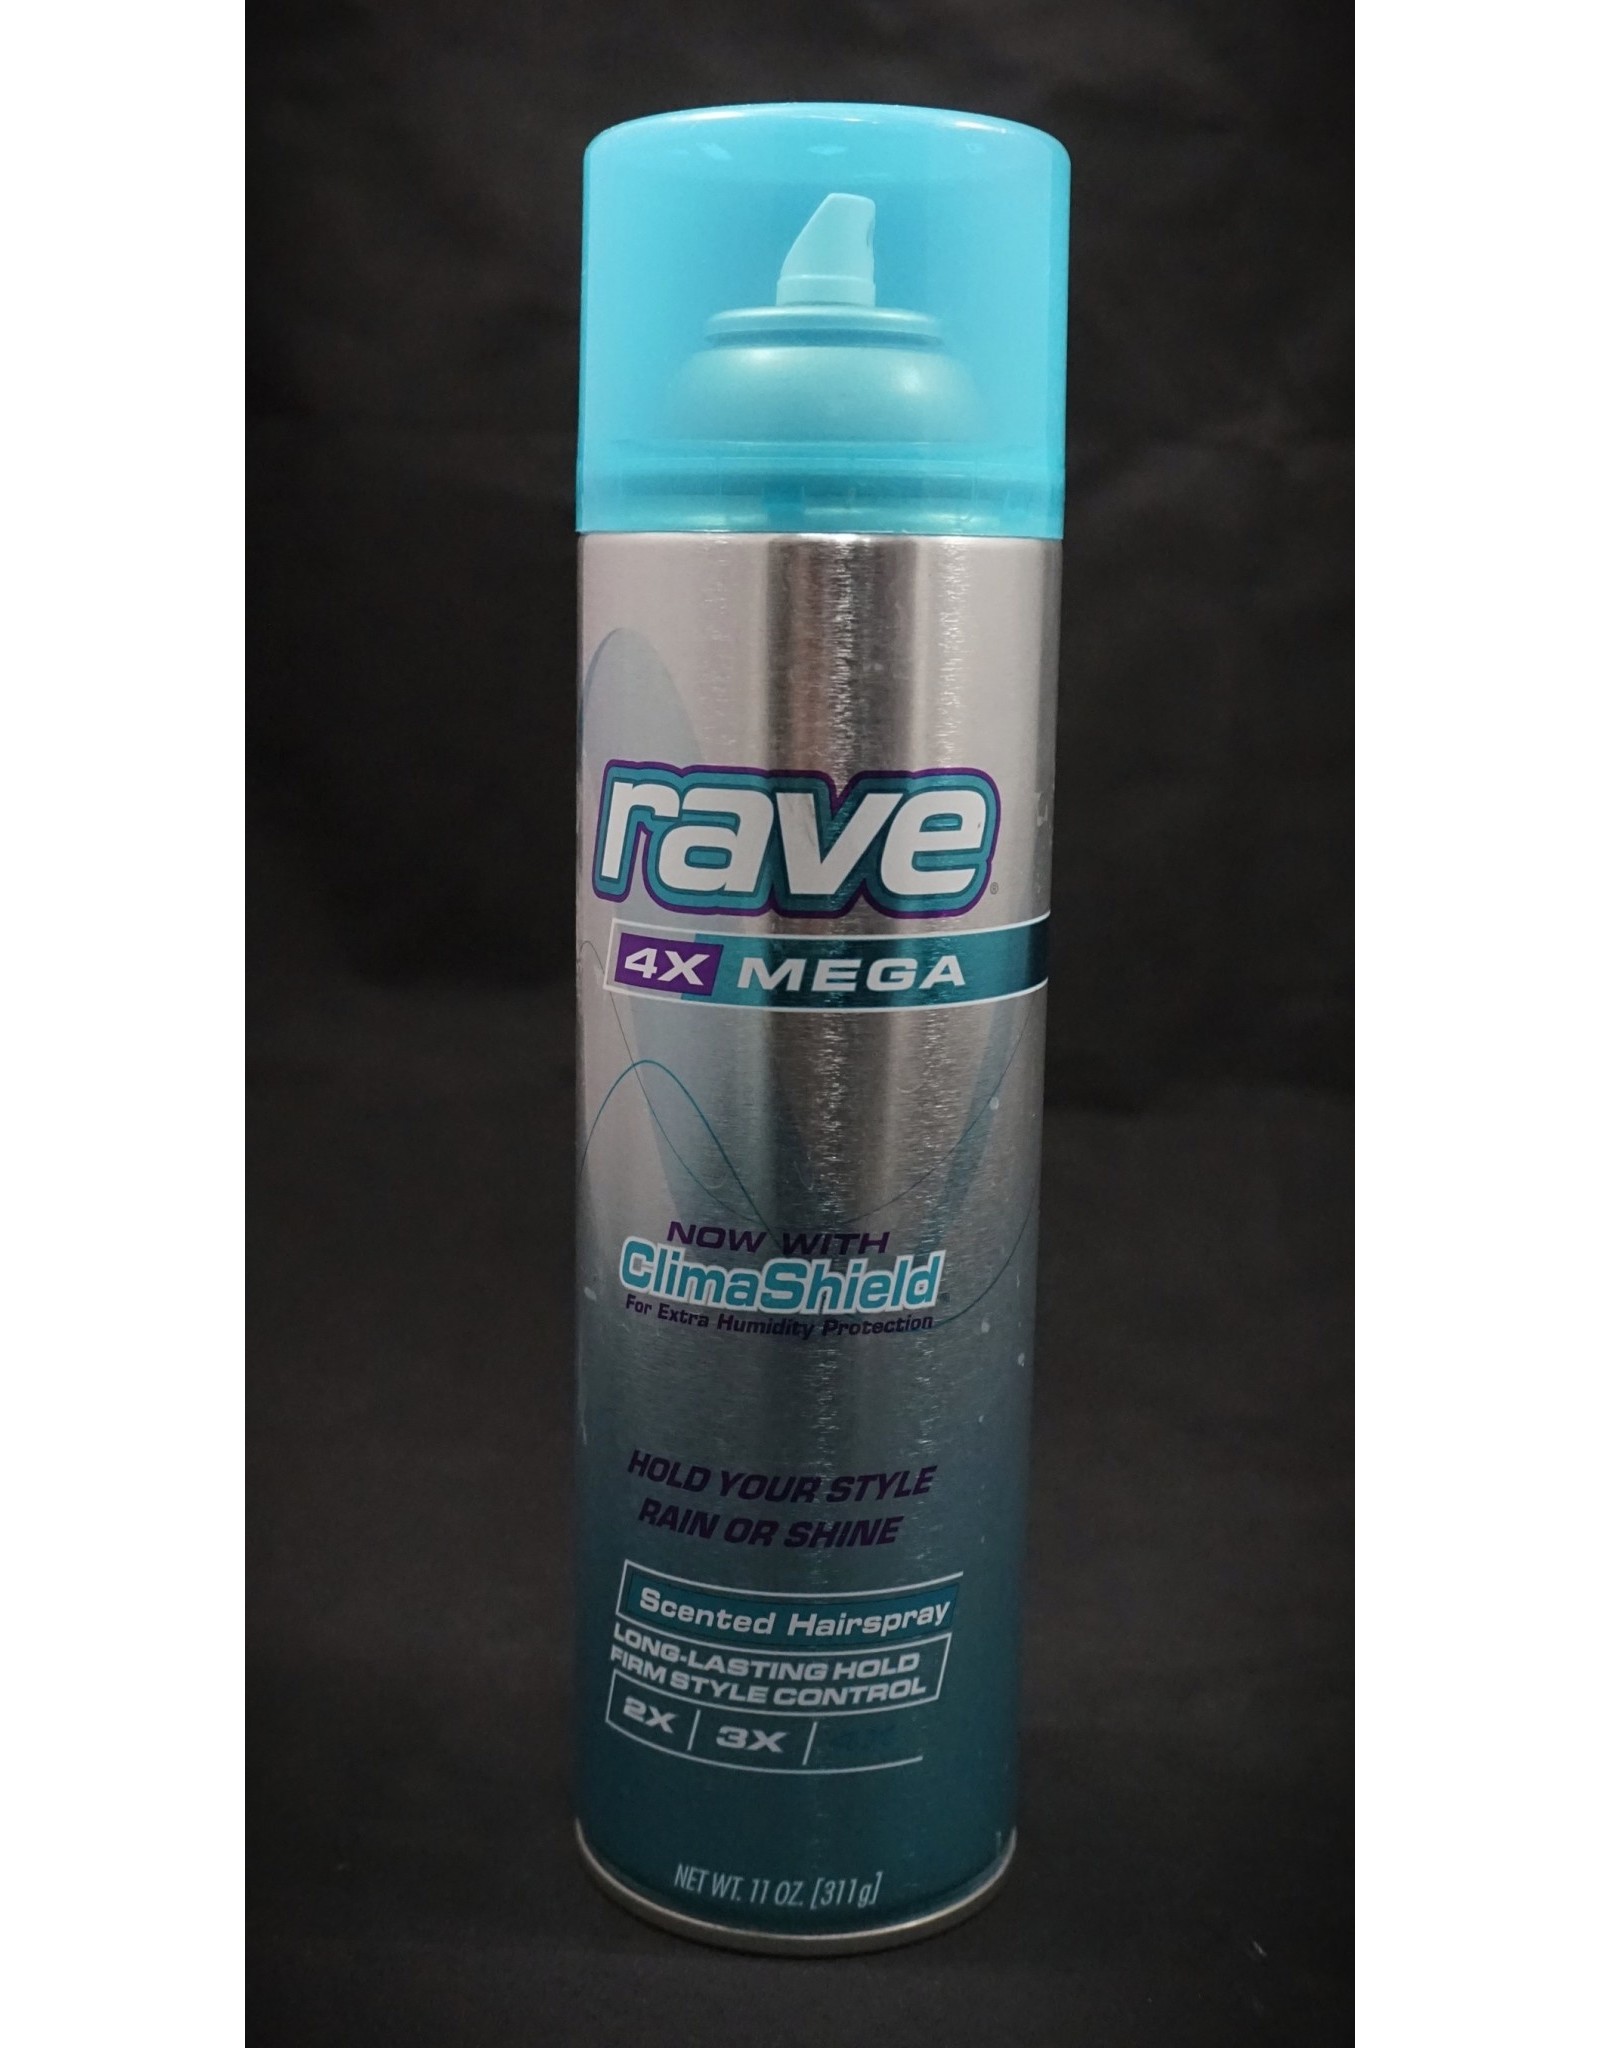 Rave Hairspray Diversion Safe